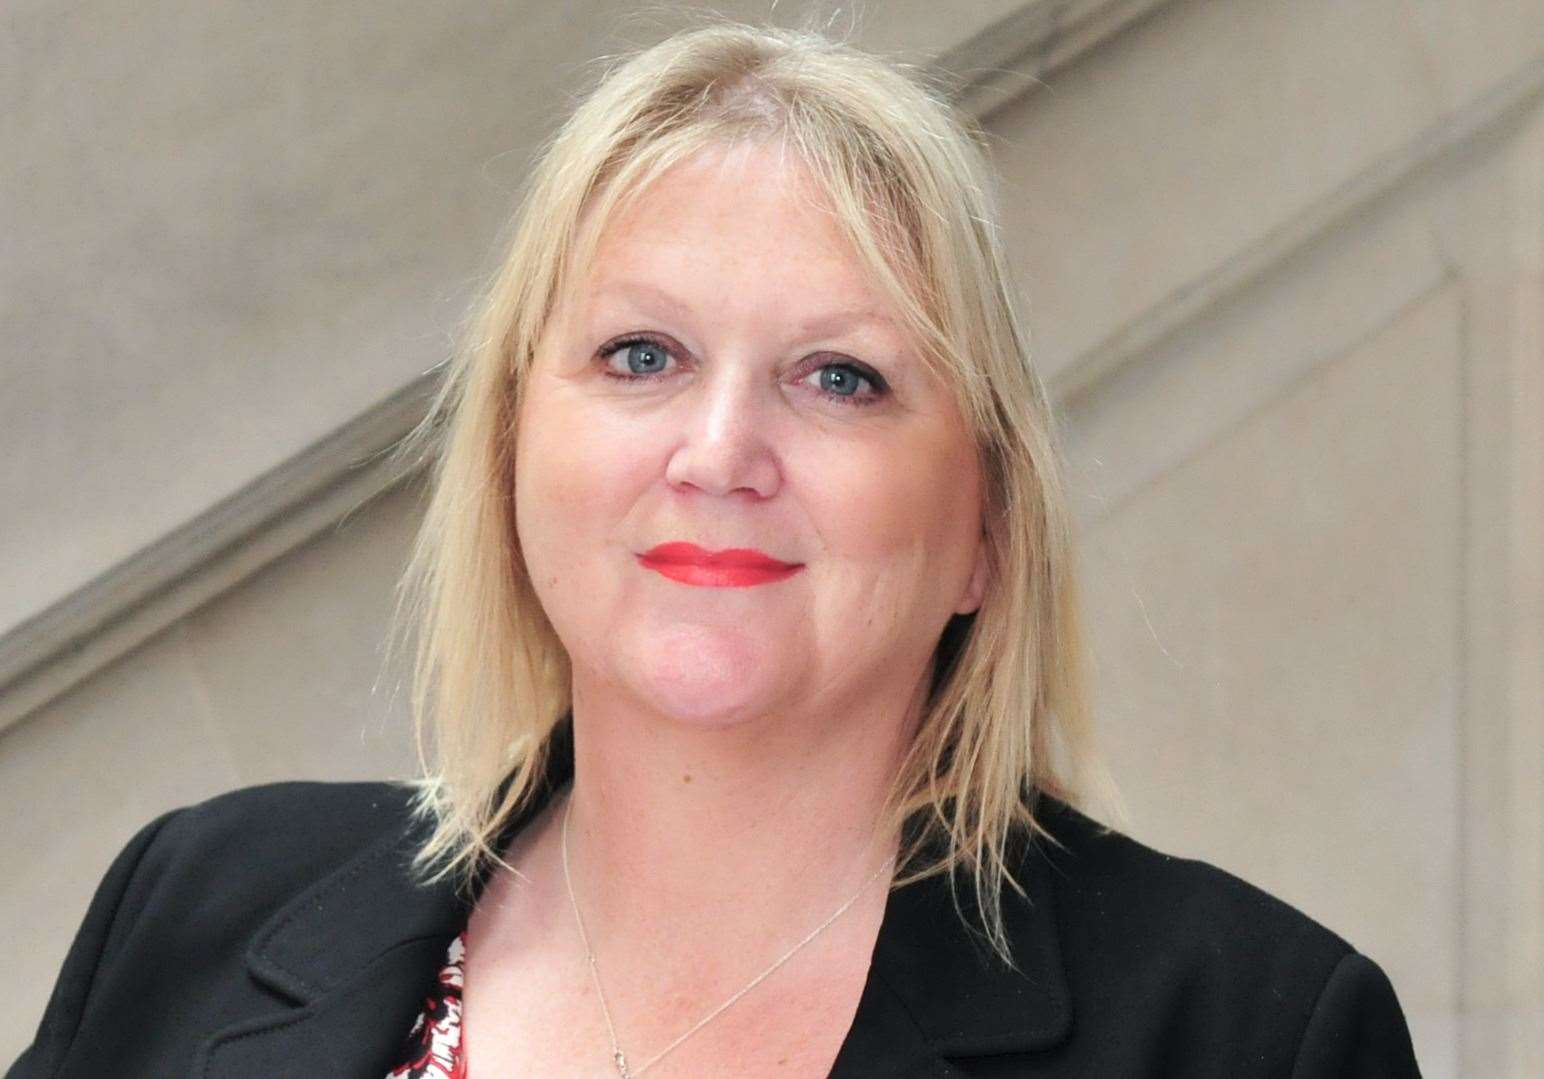 County councillor Karen Constantine